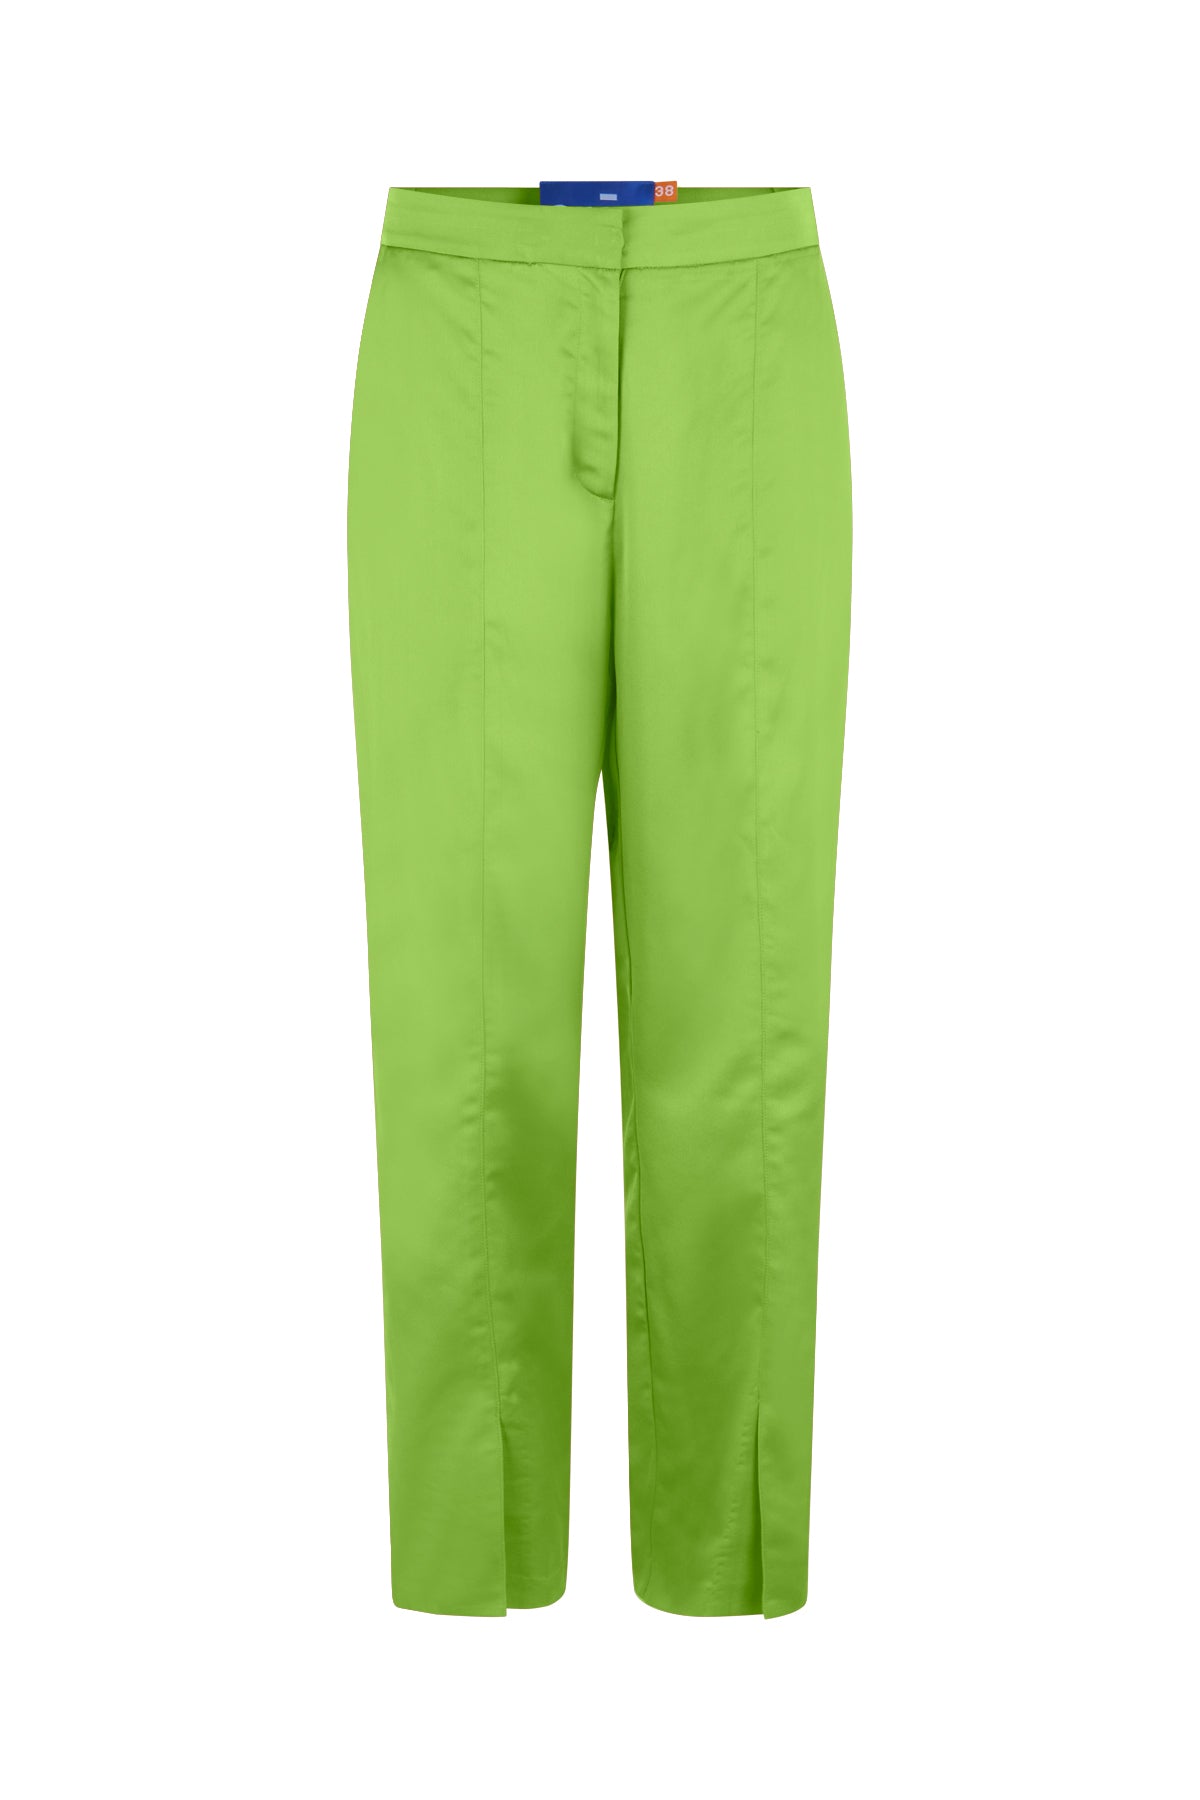 CRAS Samy Pants Pants Acid Lime